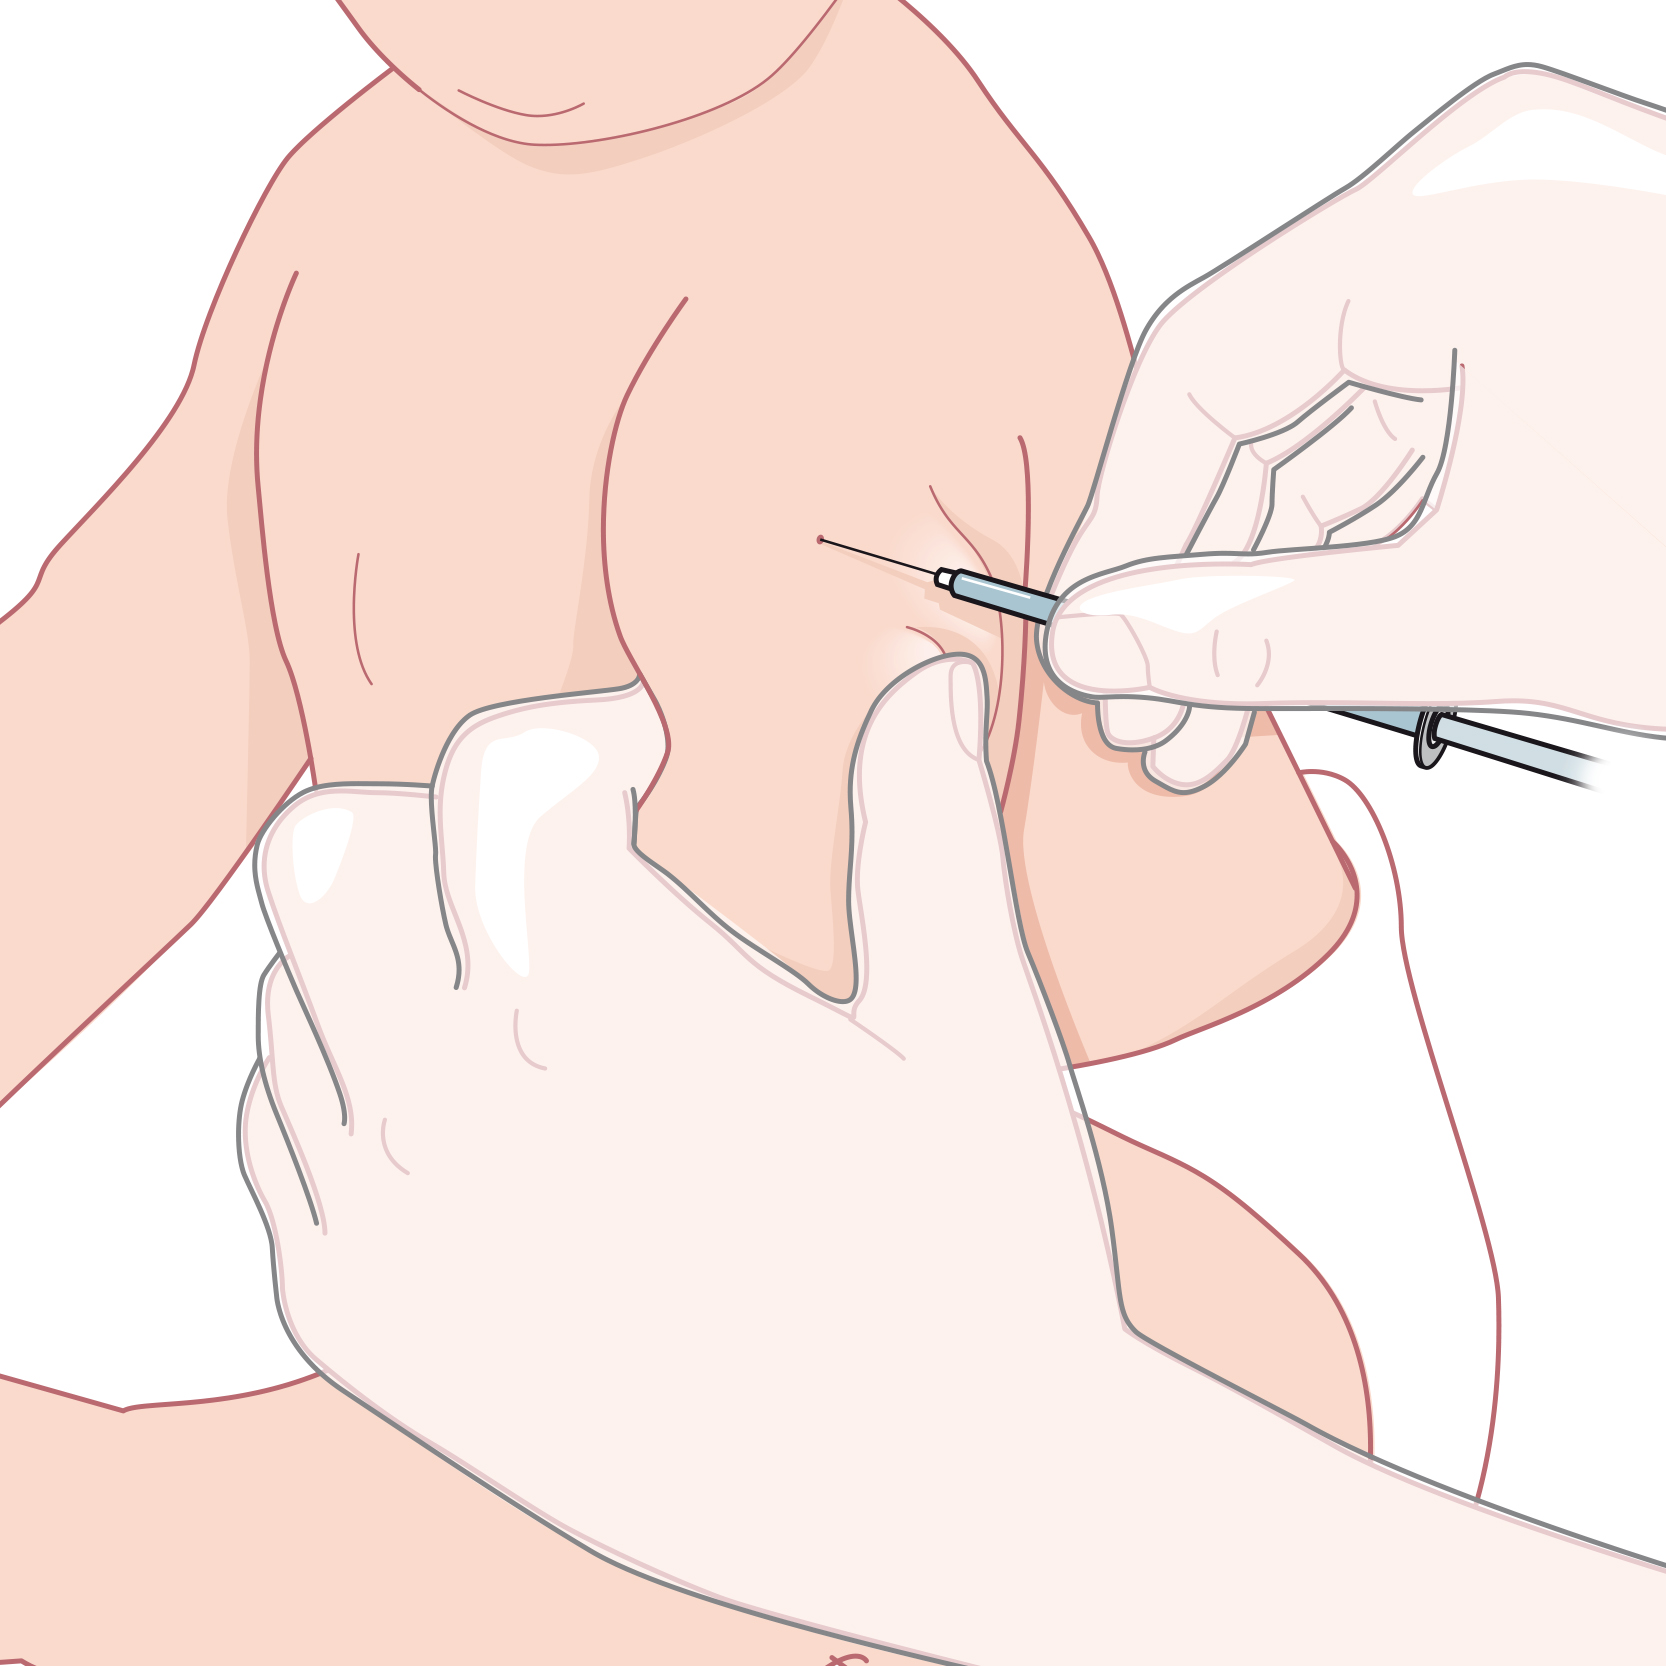 Två vuxna händer håller i ett barns arm och sätter en intrakutan injektion med sprutan i 10 graders vinkel